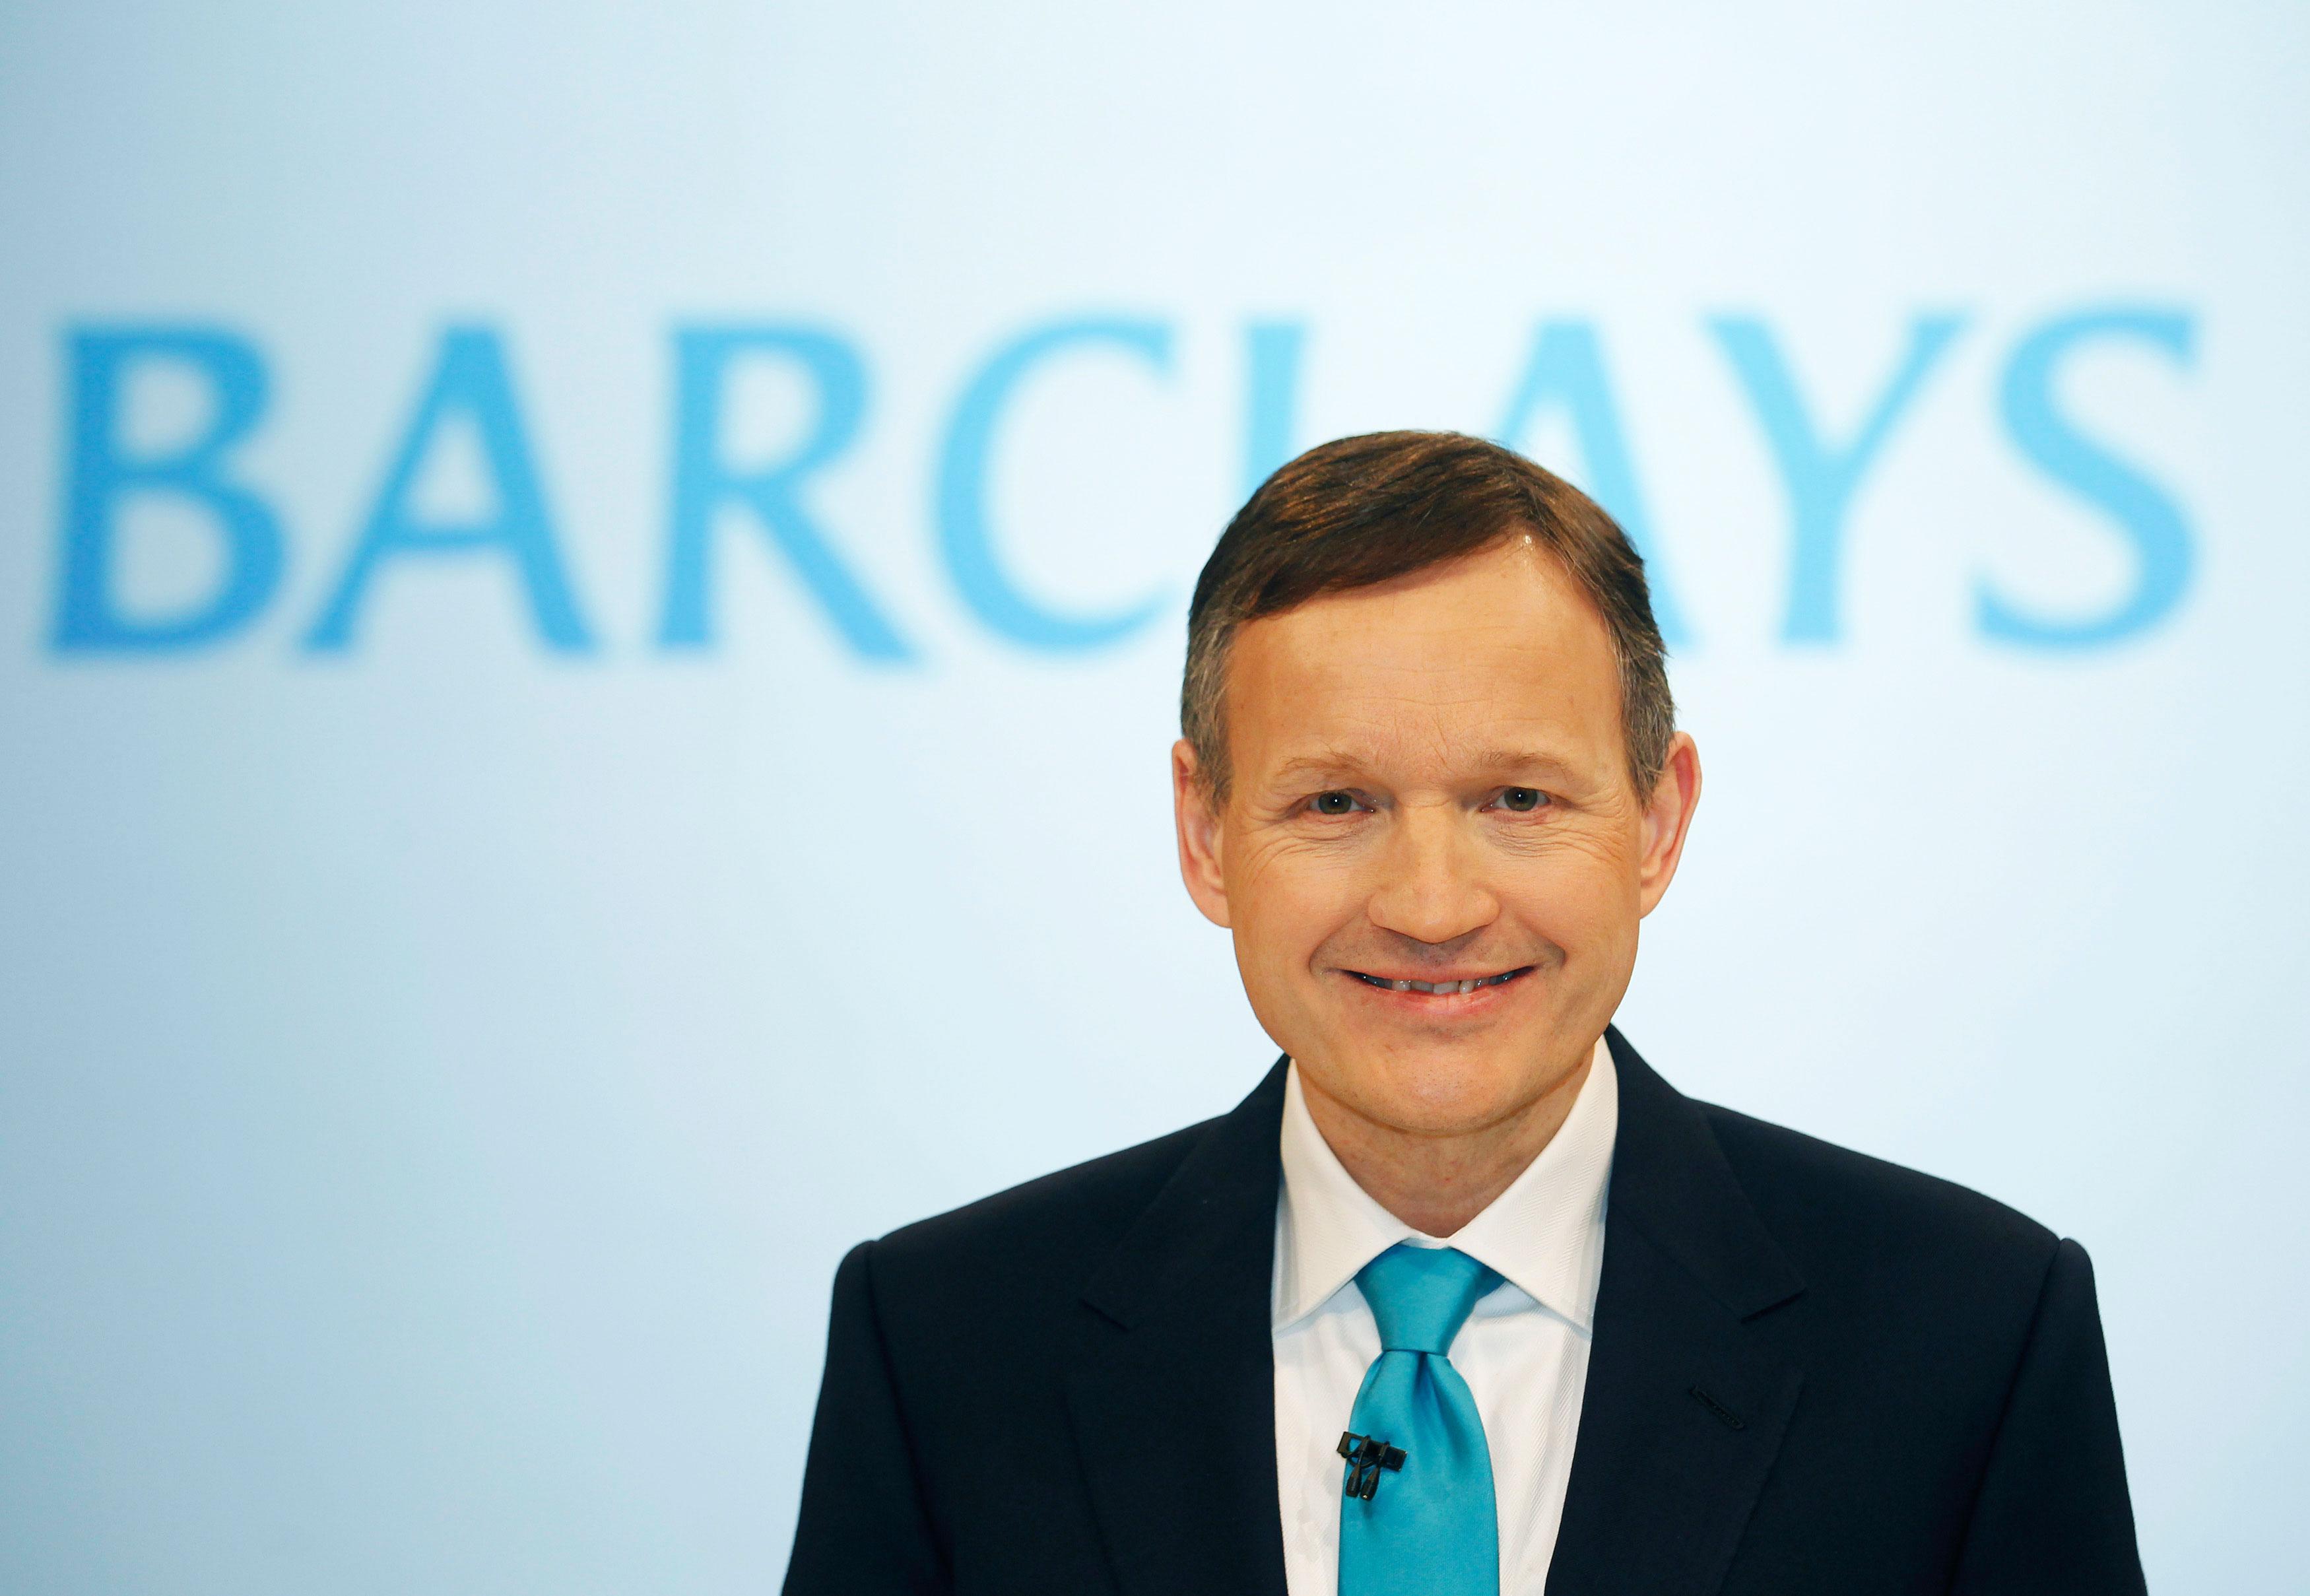 Barclays sacks CEO Antony Jenkins